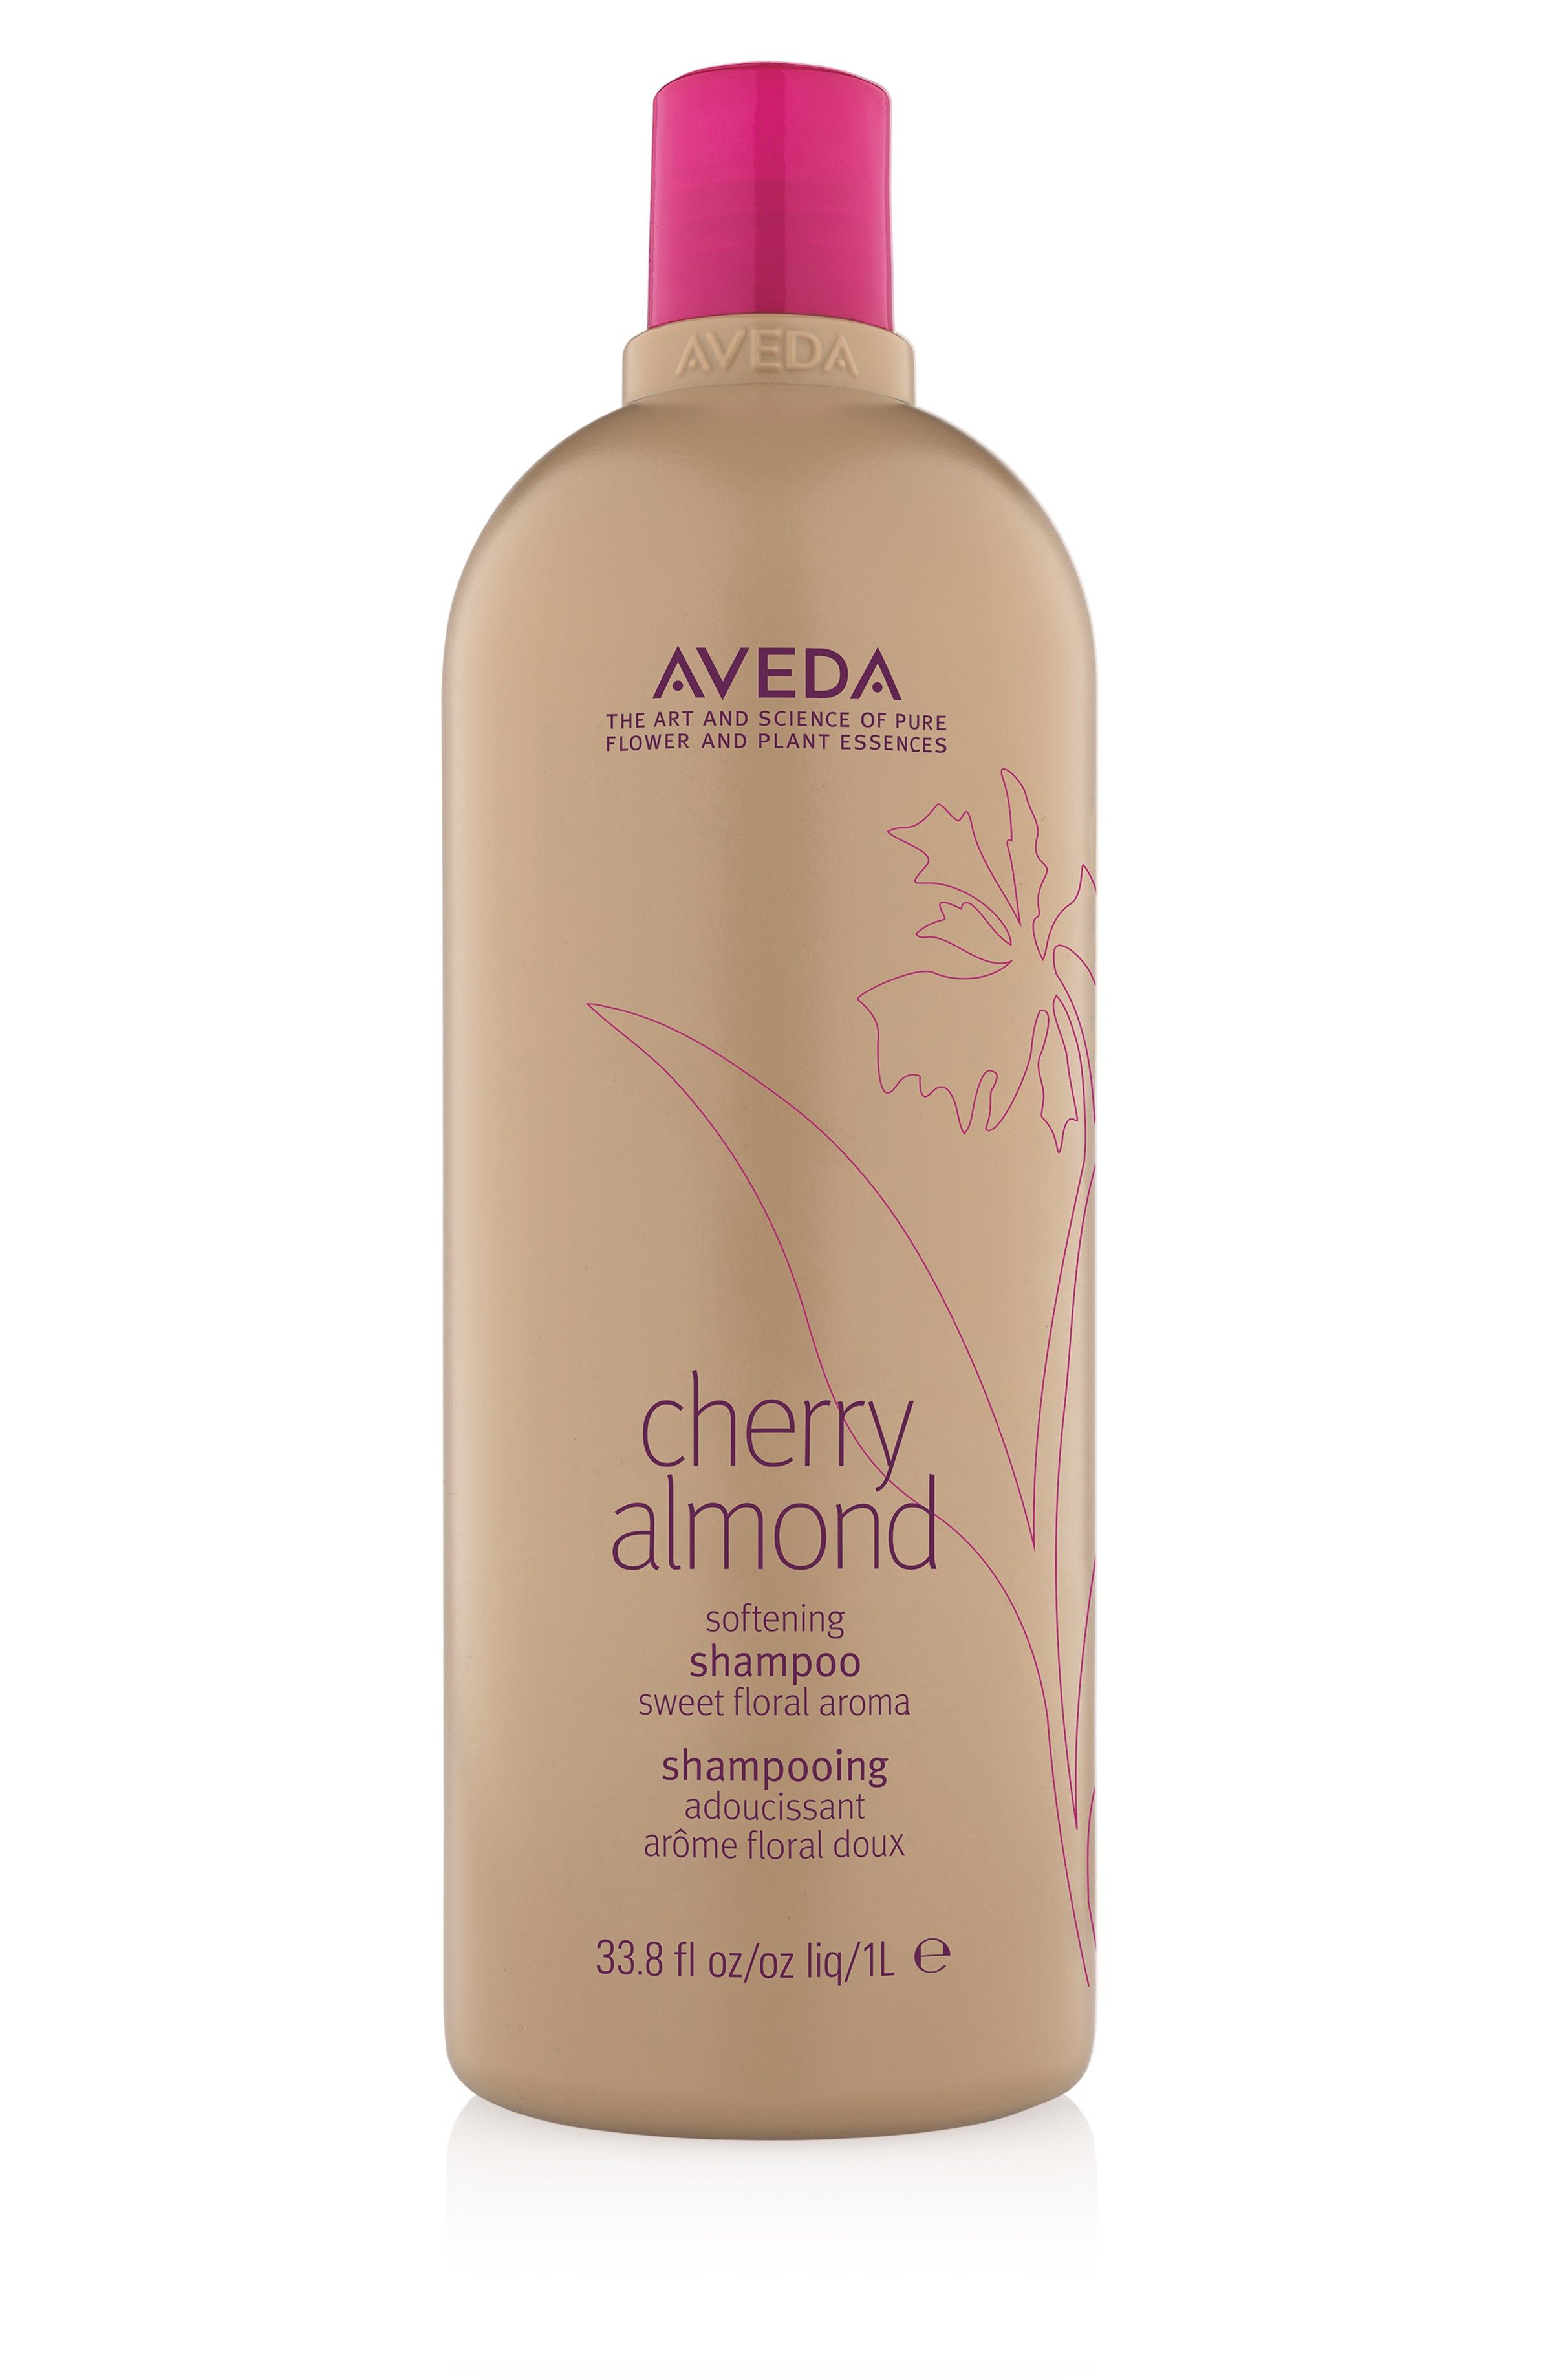 Aveda cherry almond shampoo